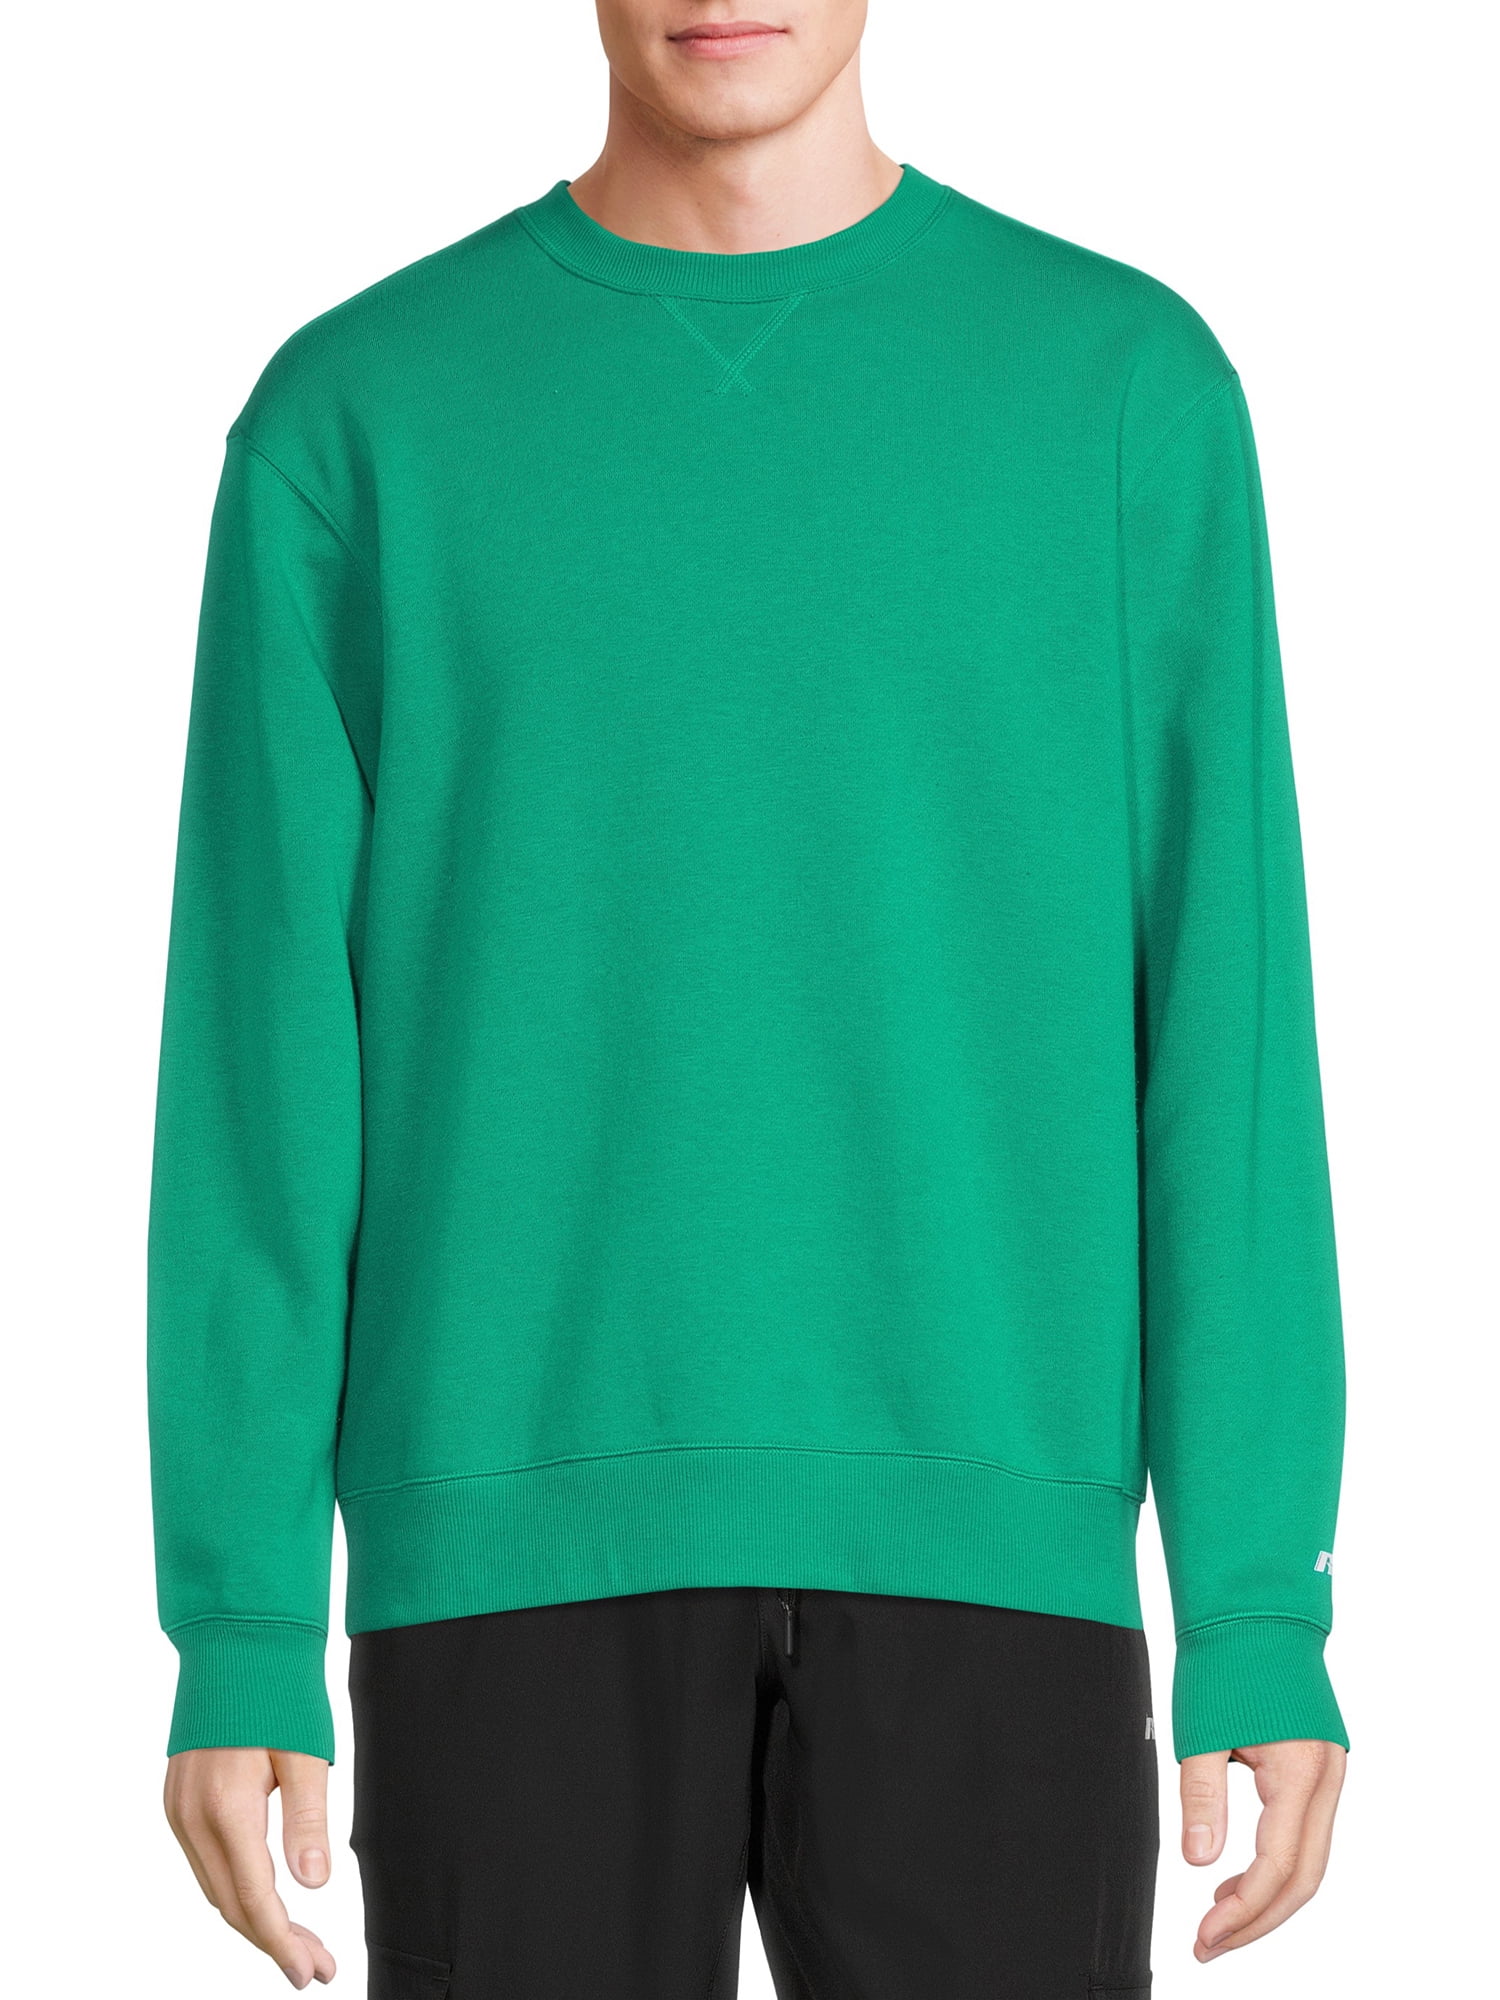 Russell Men's and Big Men's Fleece Crewneck Sweatshirt, Sizes up to 3XL ...